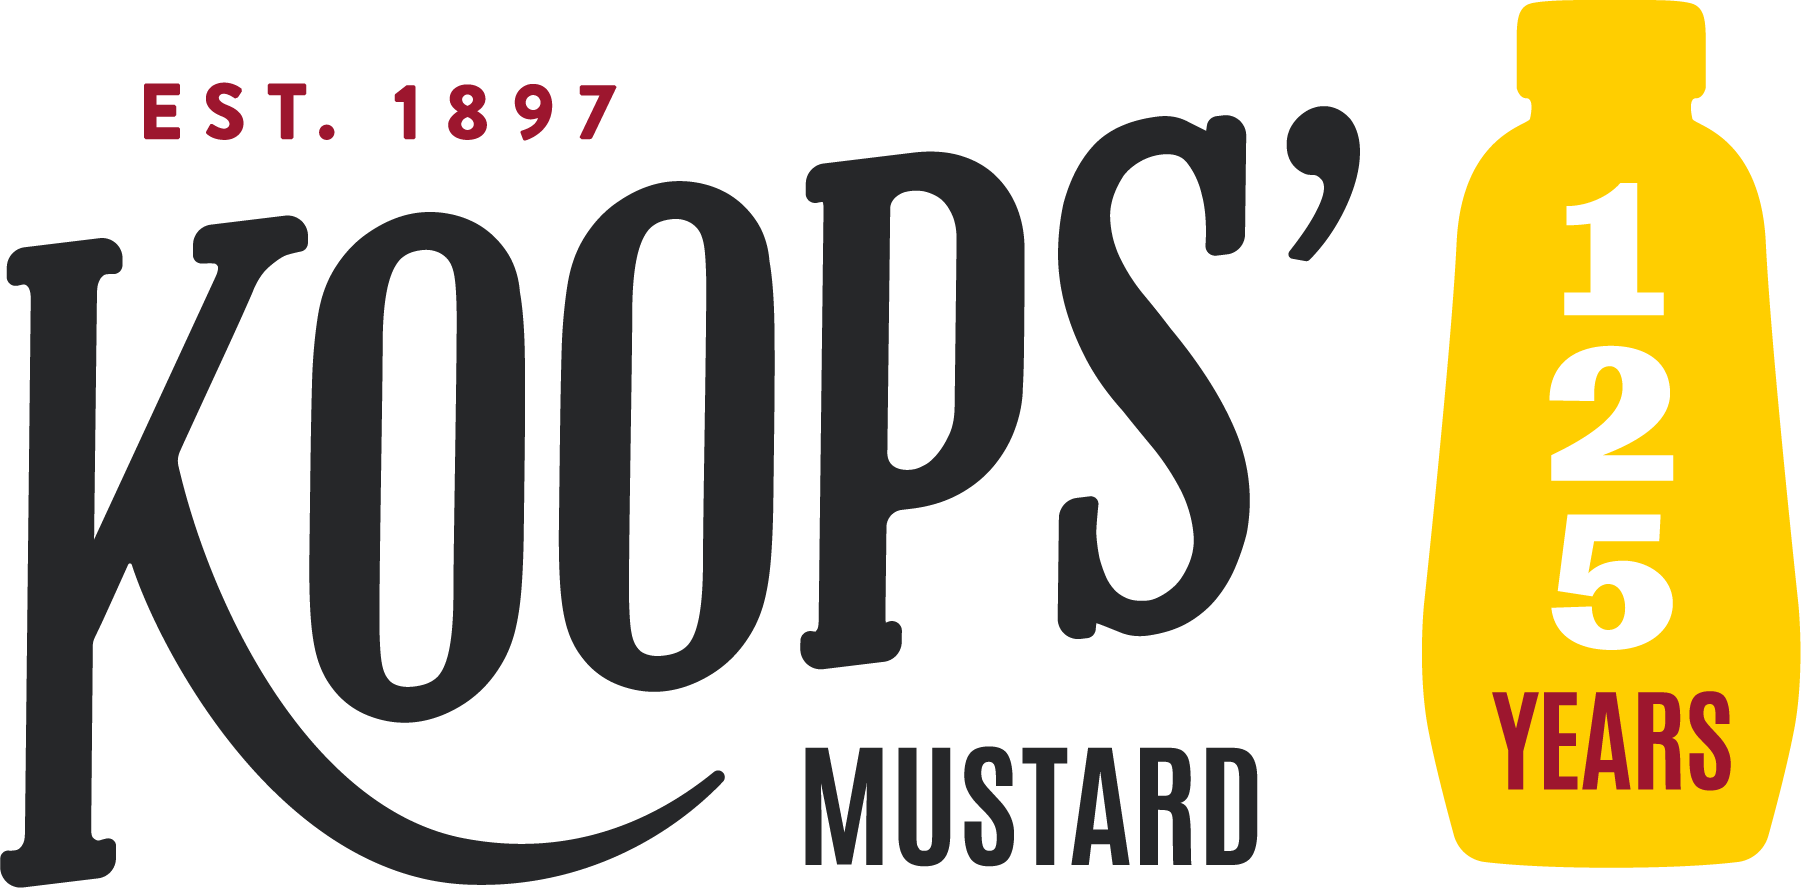 Koops' Mustard